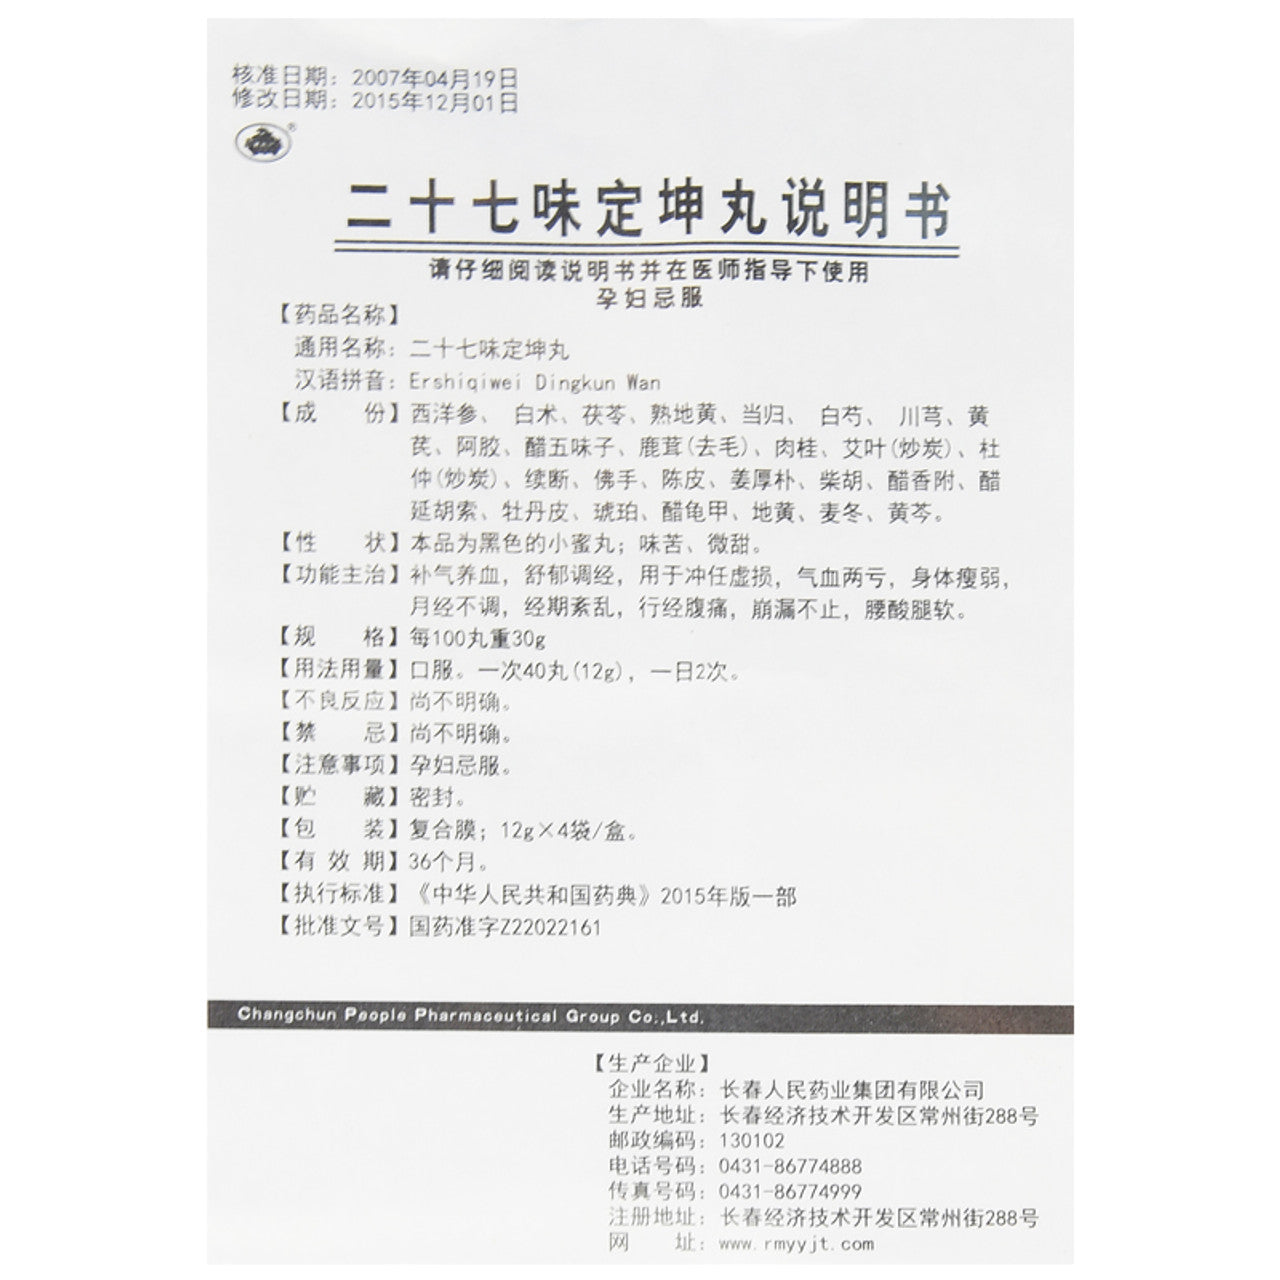 China Herb. Ershiqiwei Dingkun Wan / Er Shi Qi Wei Ding Kun Wan / Ershiqiwei Dingkun Pills / Er Shi Qi Wei Ding Kun Pills